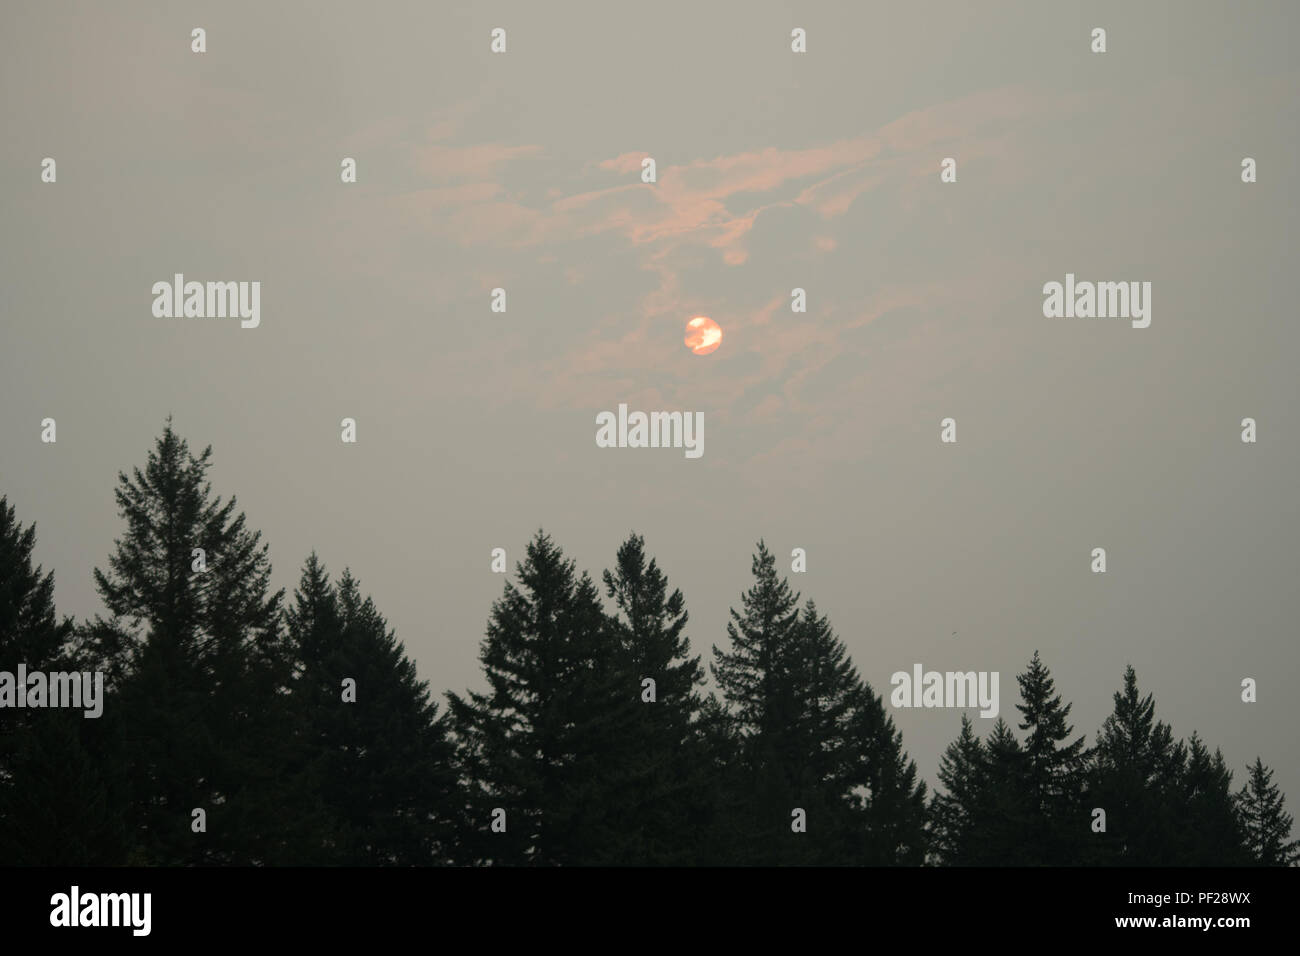 Die Sonne teilweise verdeckt von Wolken und wildfire Rauch in den Himmel, mit immergrünen Bäumen an der Unterseite des Rahmens Stockfoto